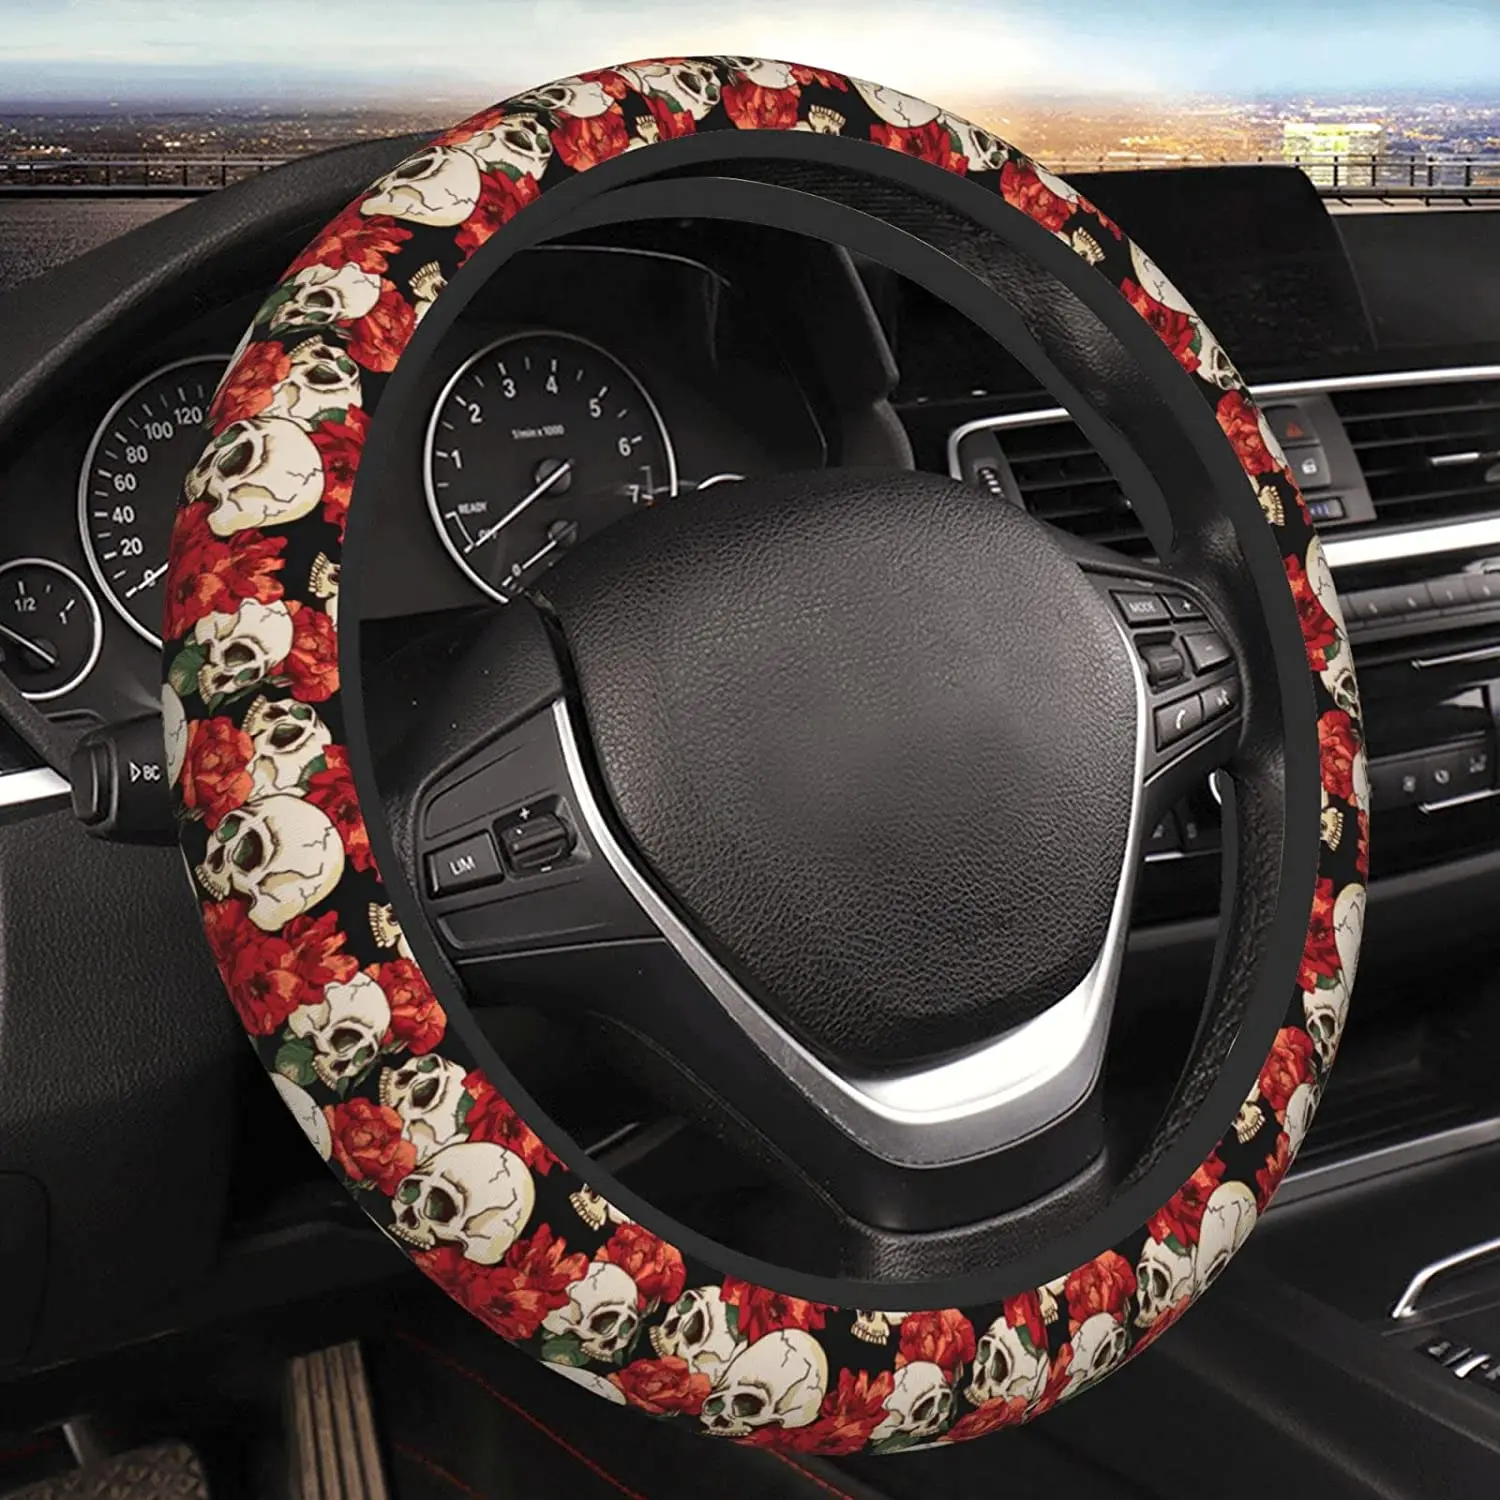 

Skull Red Flower Steering Wheel Cover Neoprene Universal 15 Inches Car Steering Wheel Protector for Women Men